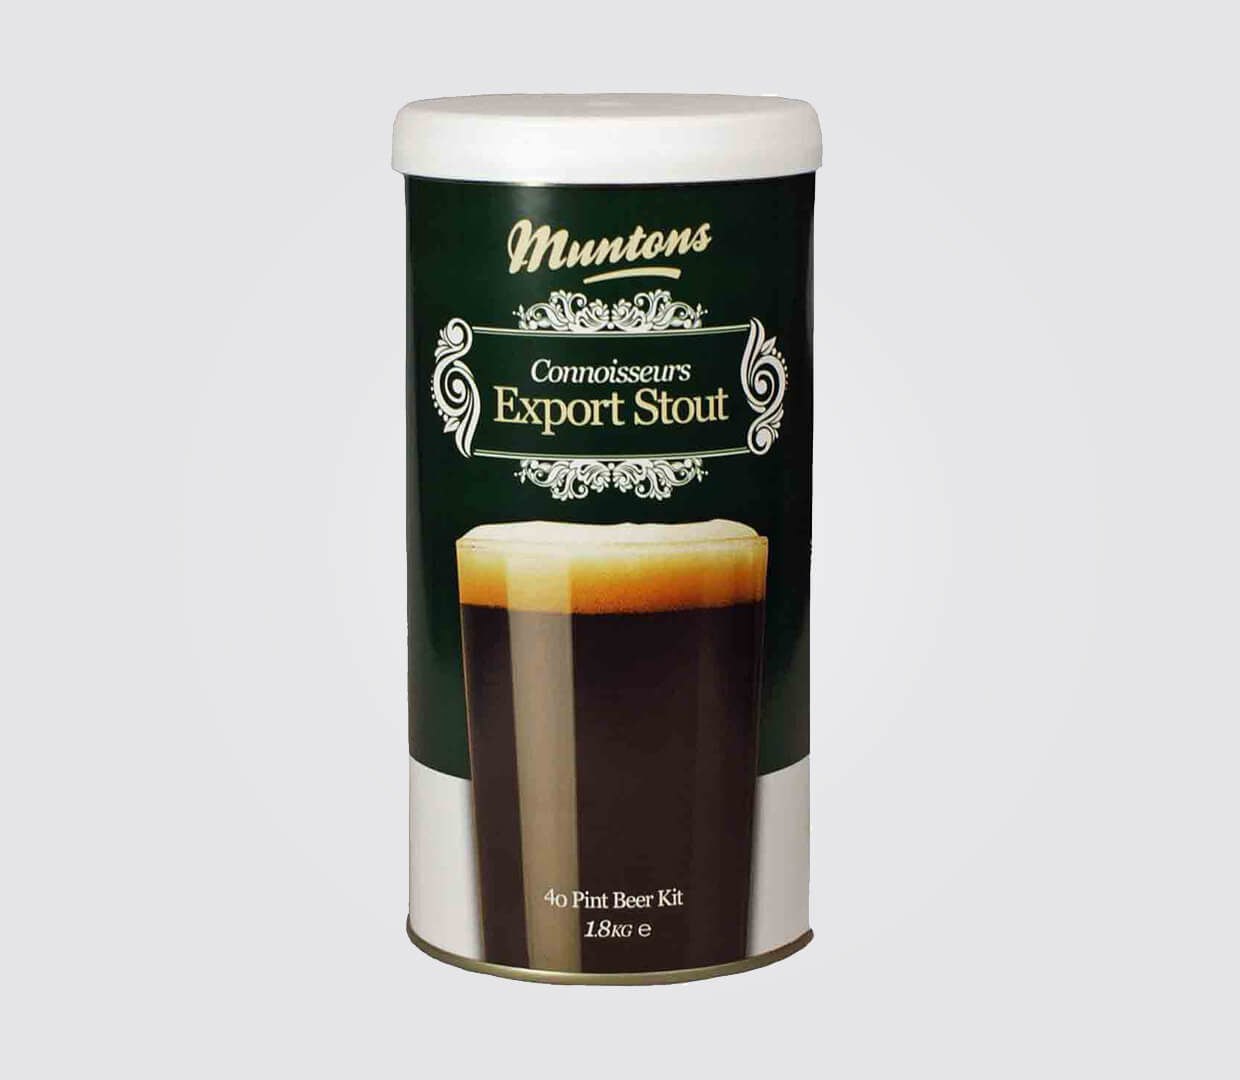 Muntons Connoisseurs Home Brew Kit Range